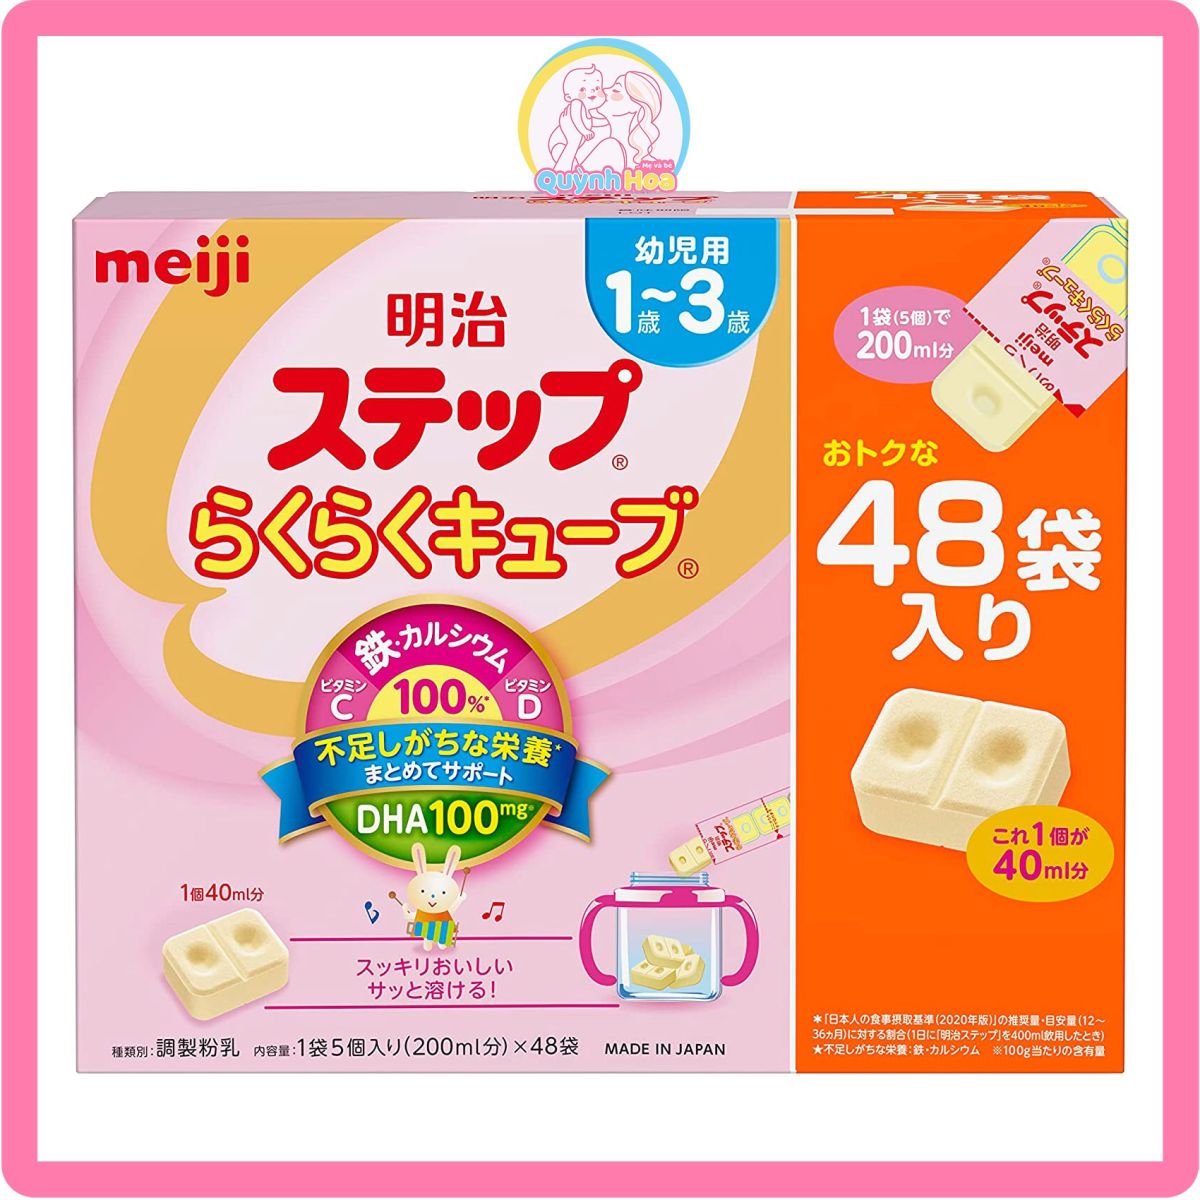 Sữa Meiji Nhật số 1-3 dạng thanh, 24 thanh [DATE 02/2025] thumb 1